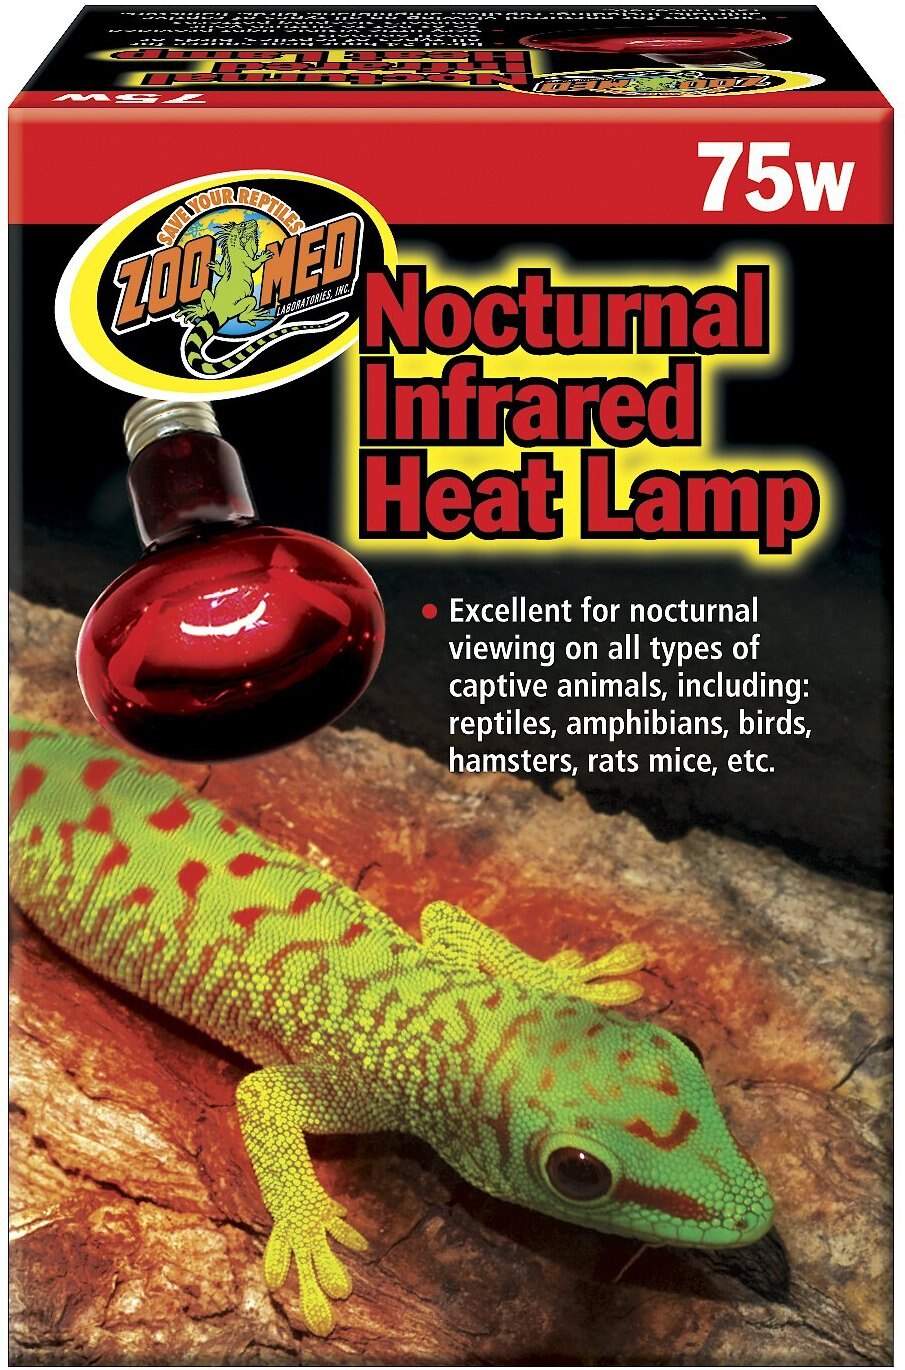 75w heat lamp